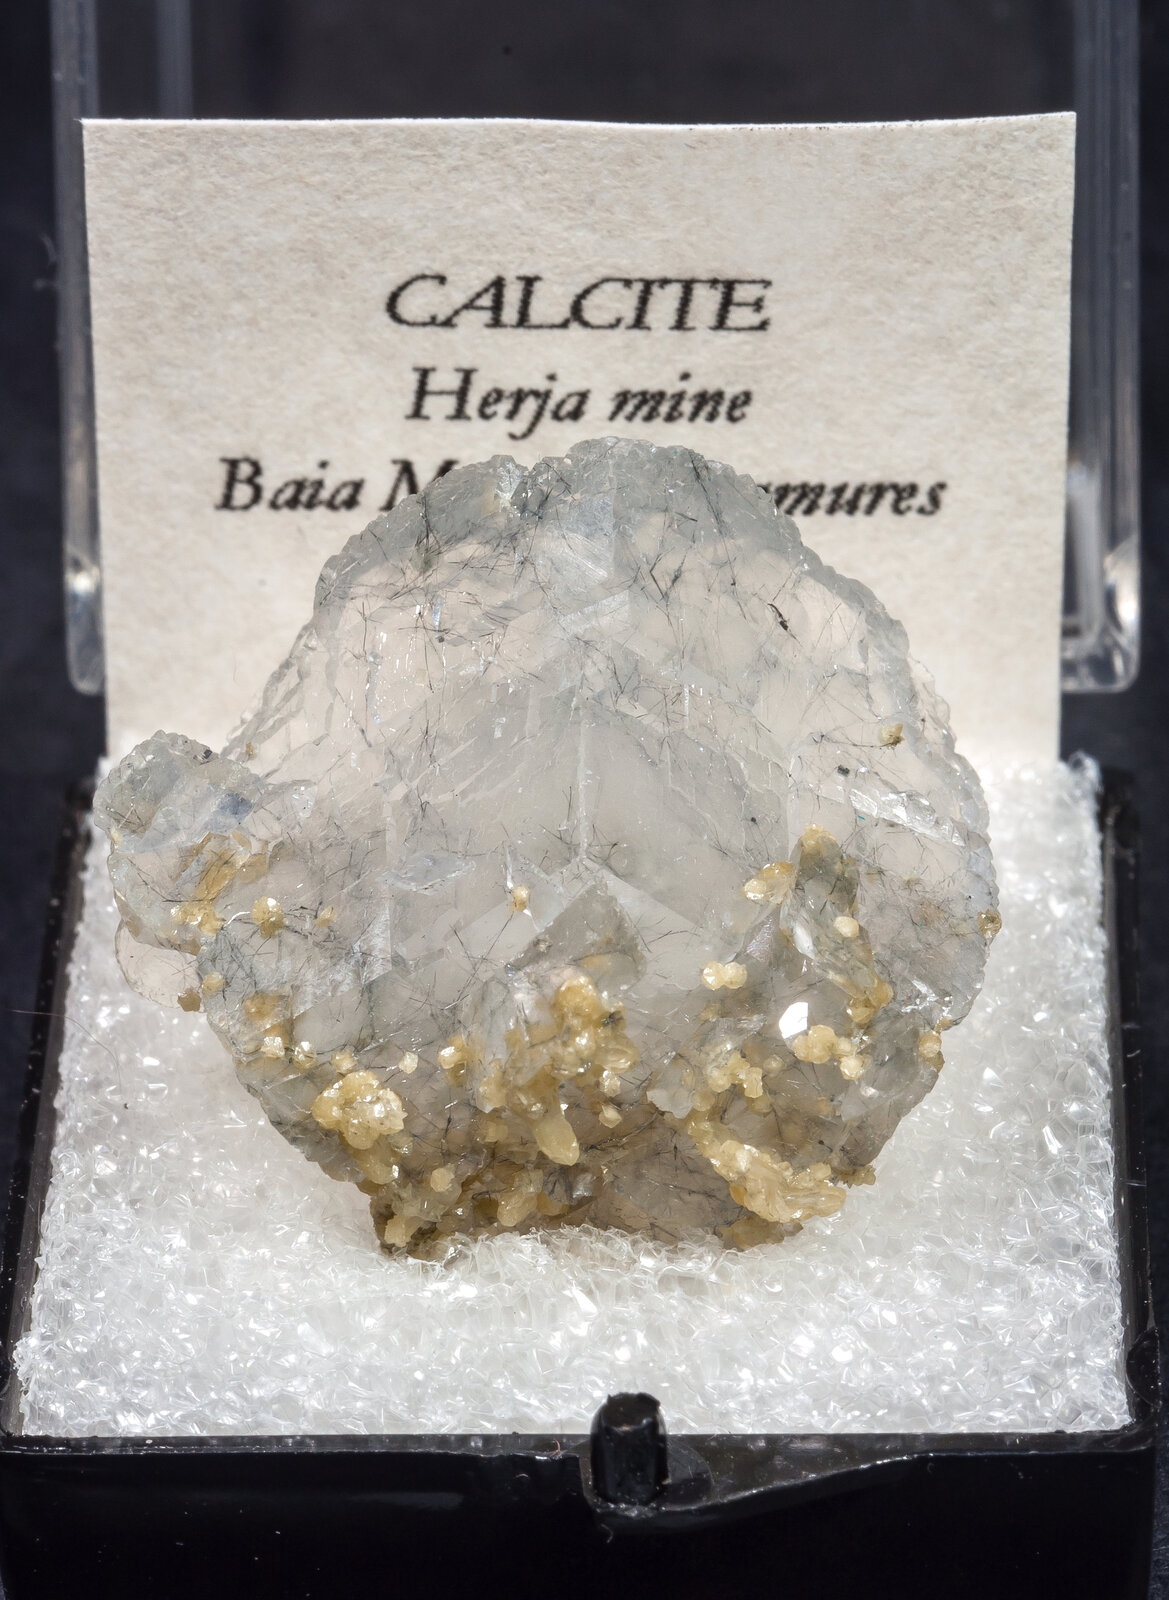 specimens/s_imagesAM6/Calcite-MK12AM6f.jpg